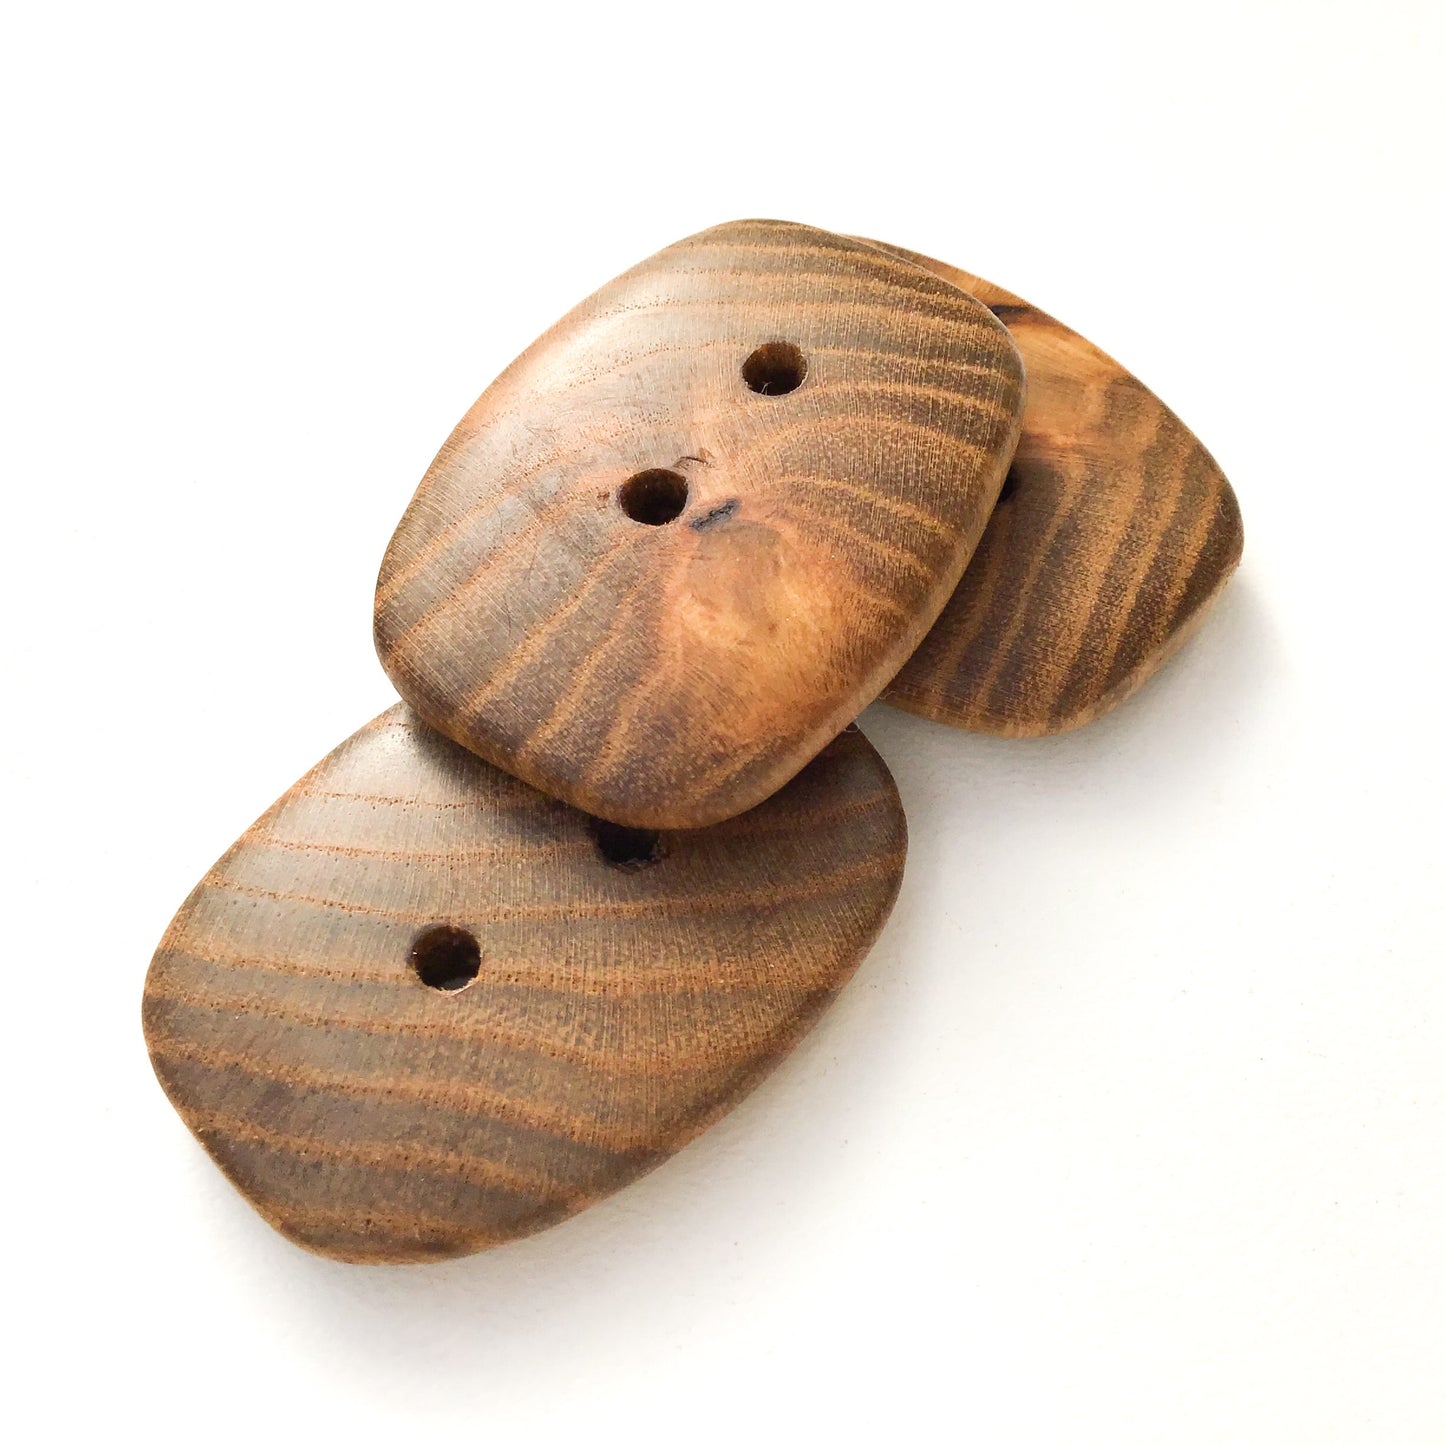 Sassafras Wood Buttons - Round Wood Buttons - 1" x 1  3/8" - 3 Pack